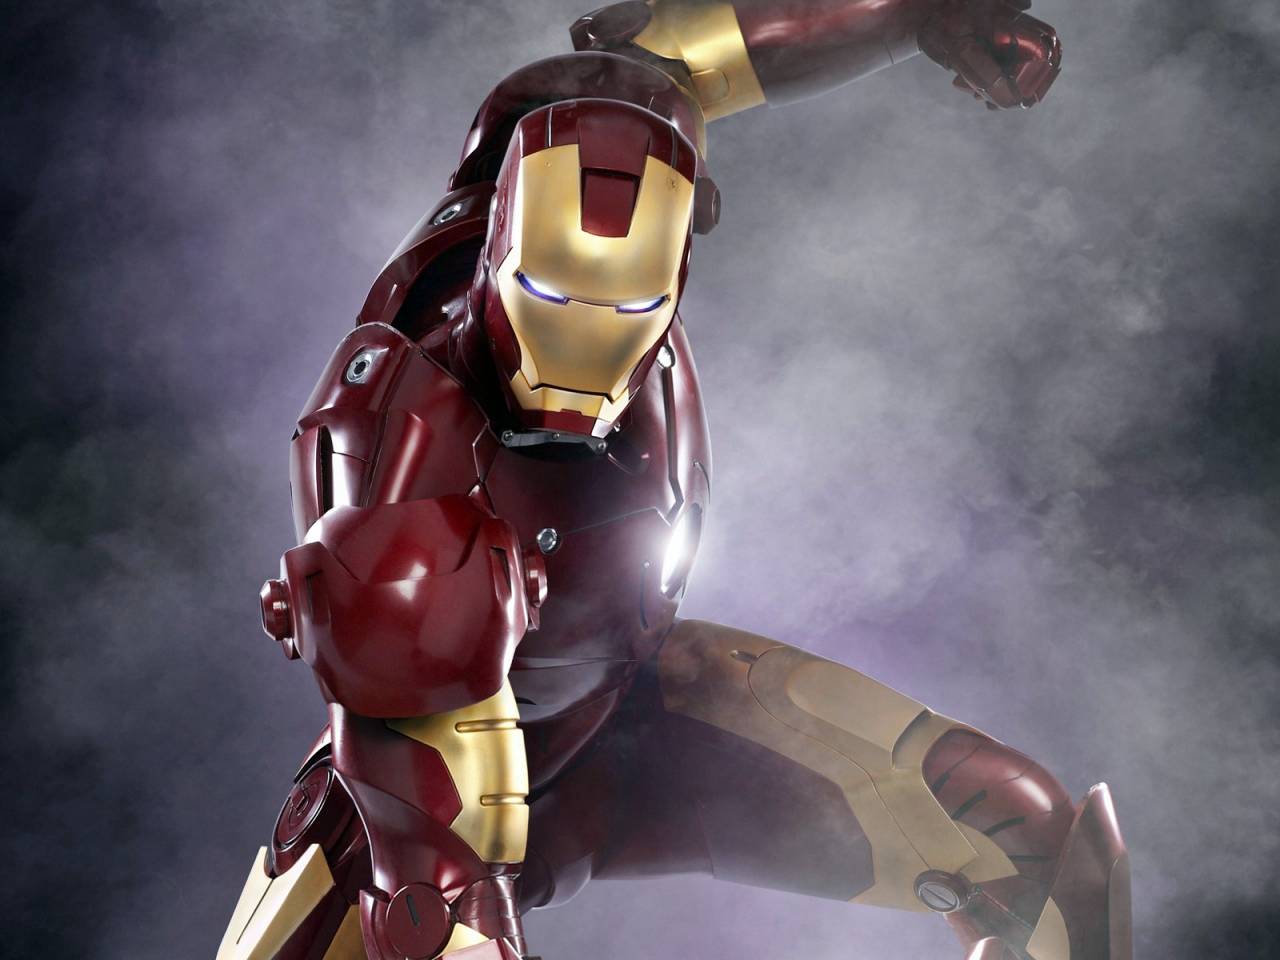 Robert Downey Jr Plays Iron Man In Iron Man - Creative Wallpaper For Broken Screen - HD Wallpaper 